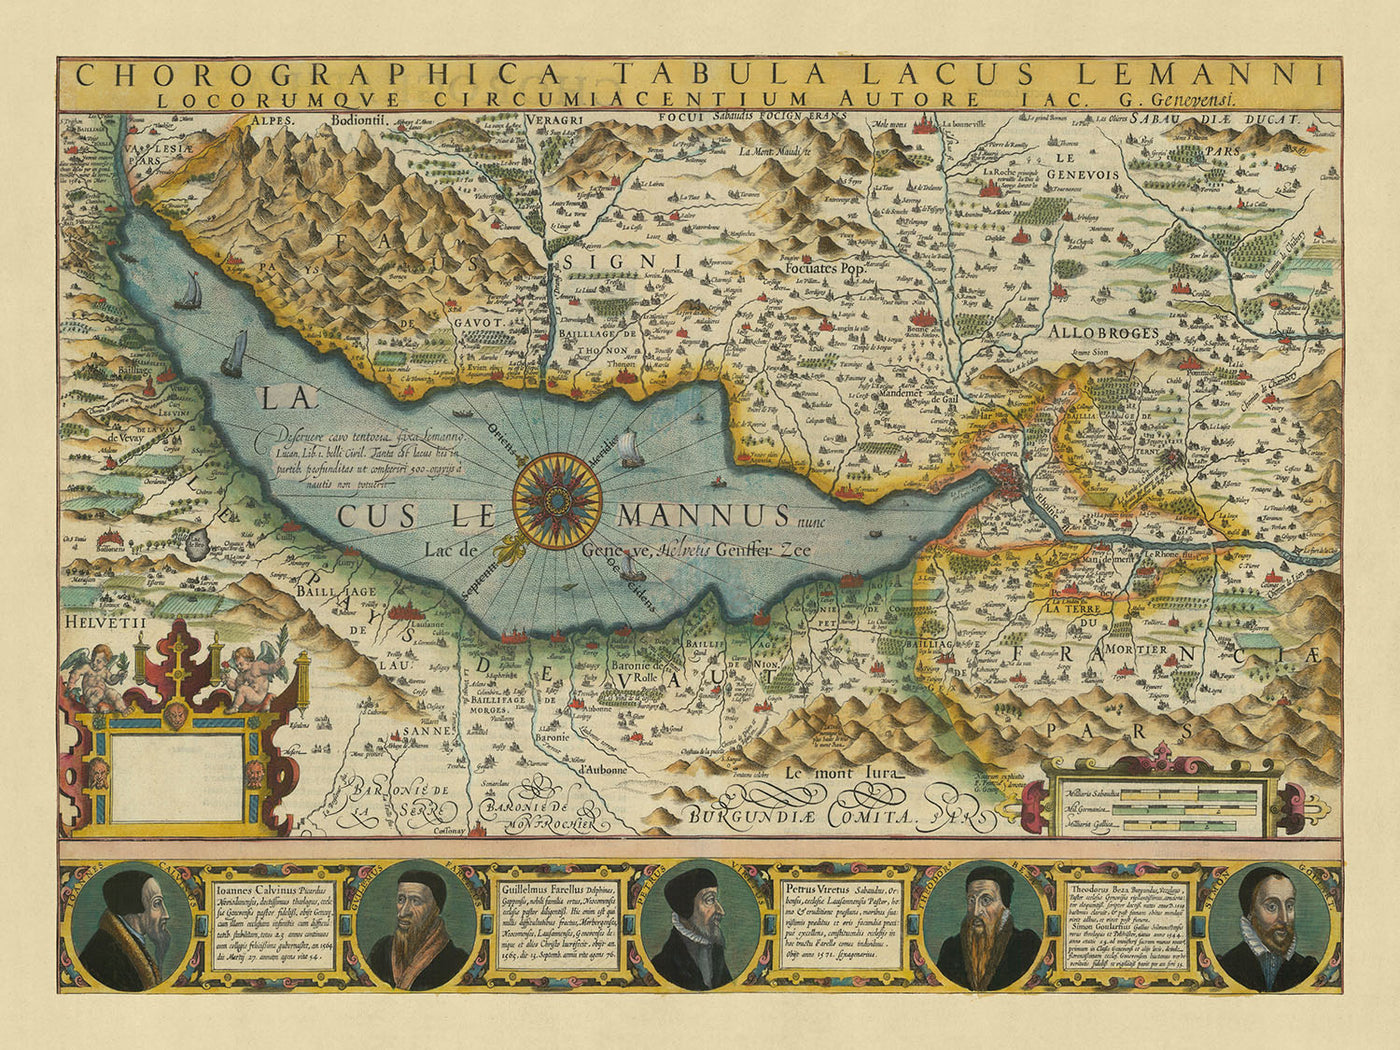 Alte Karte des Genfersees und des Kantons Genf von Hondius, 1606: Genf, Lausanne, Die Alpen, Genfersee, Rhone